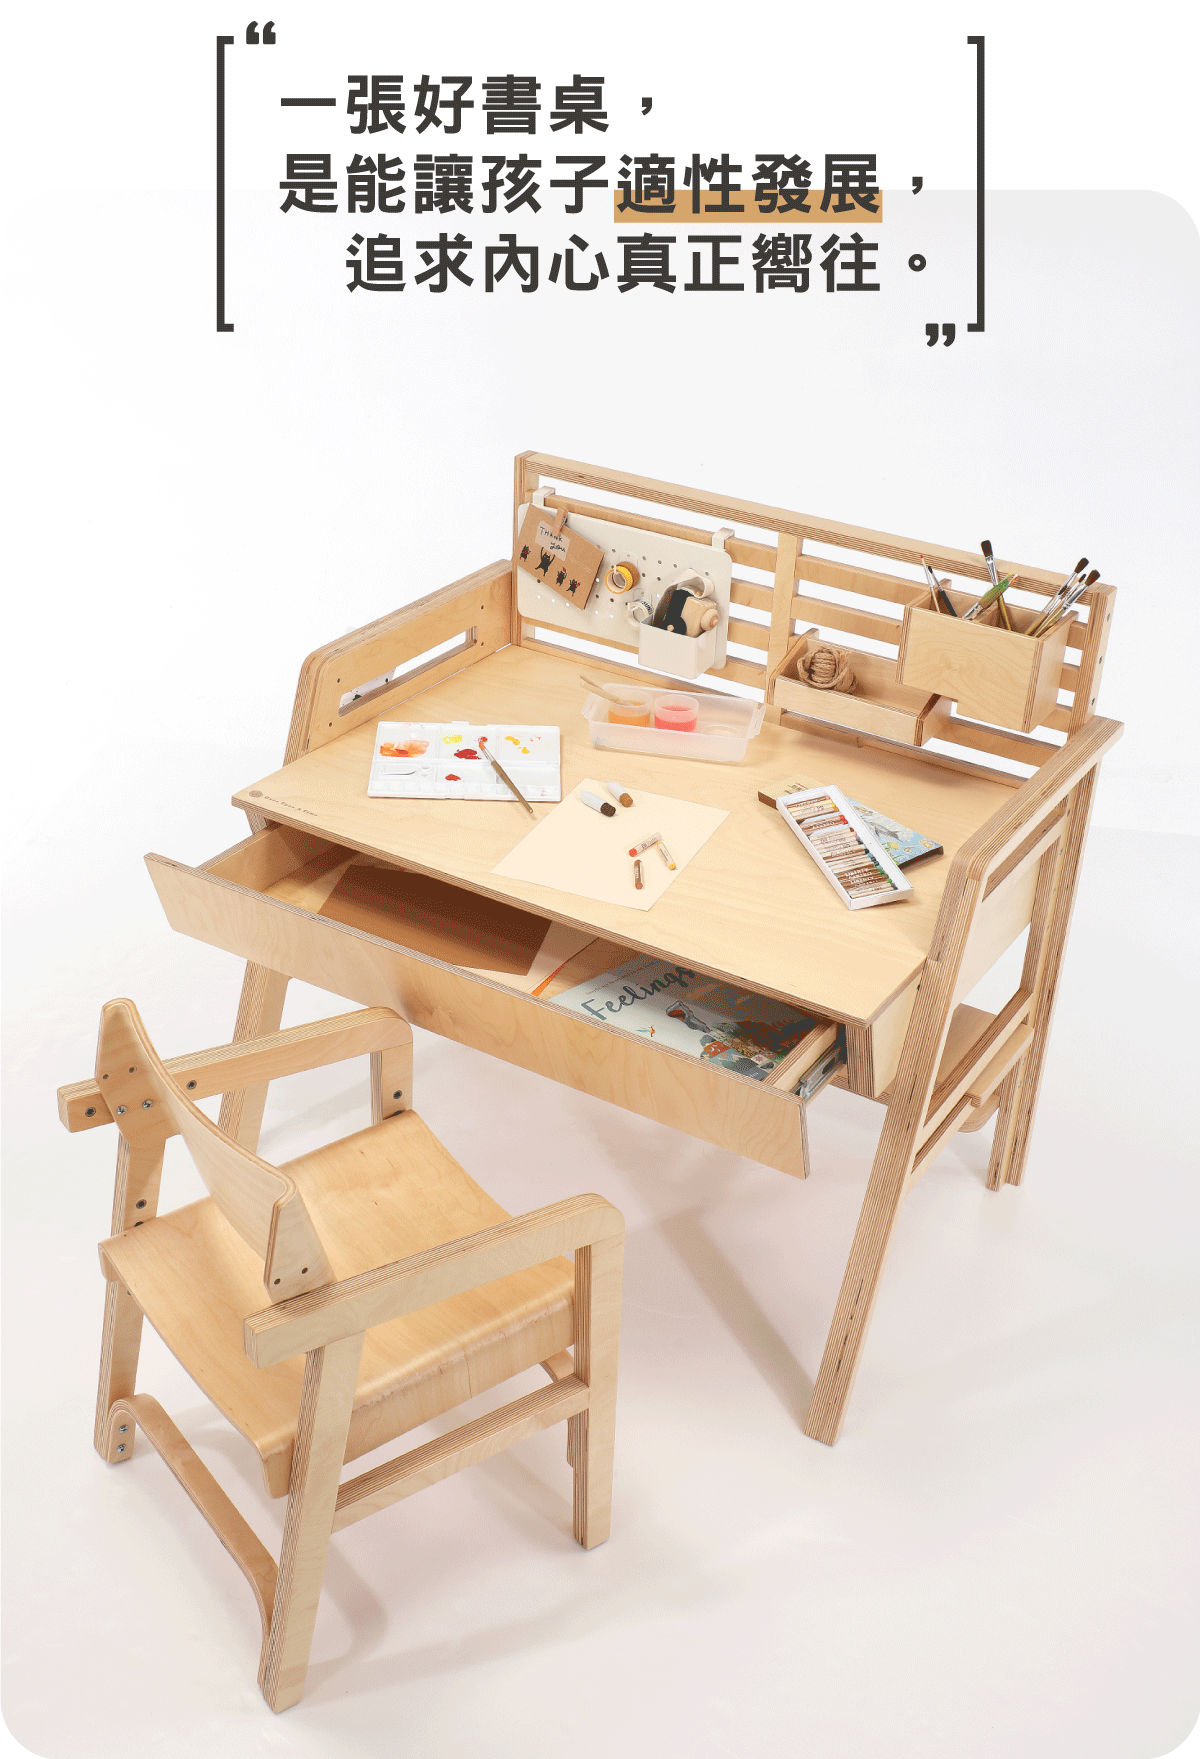 柯比桌 - 專為學齡前兒童設計的成長型書桌07